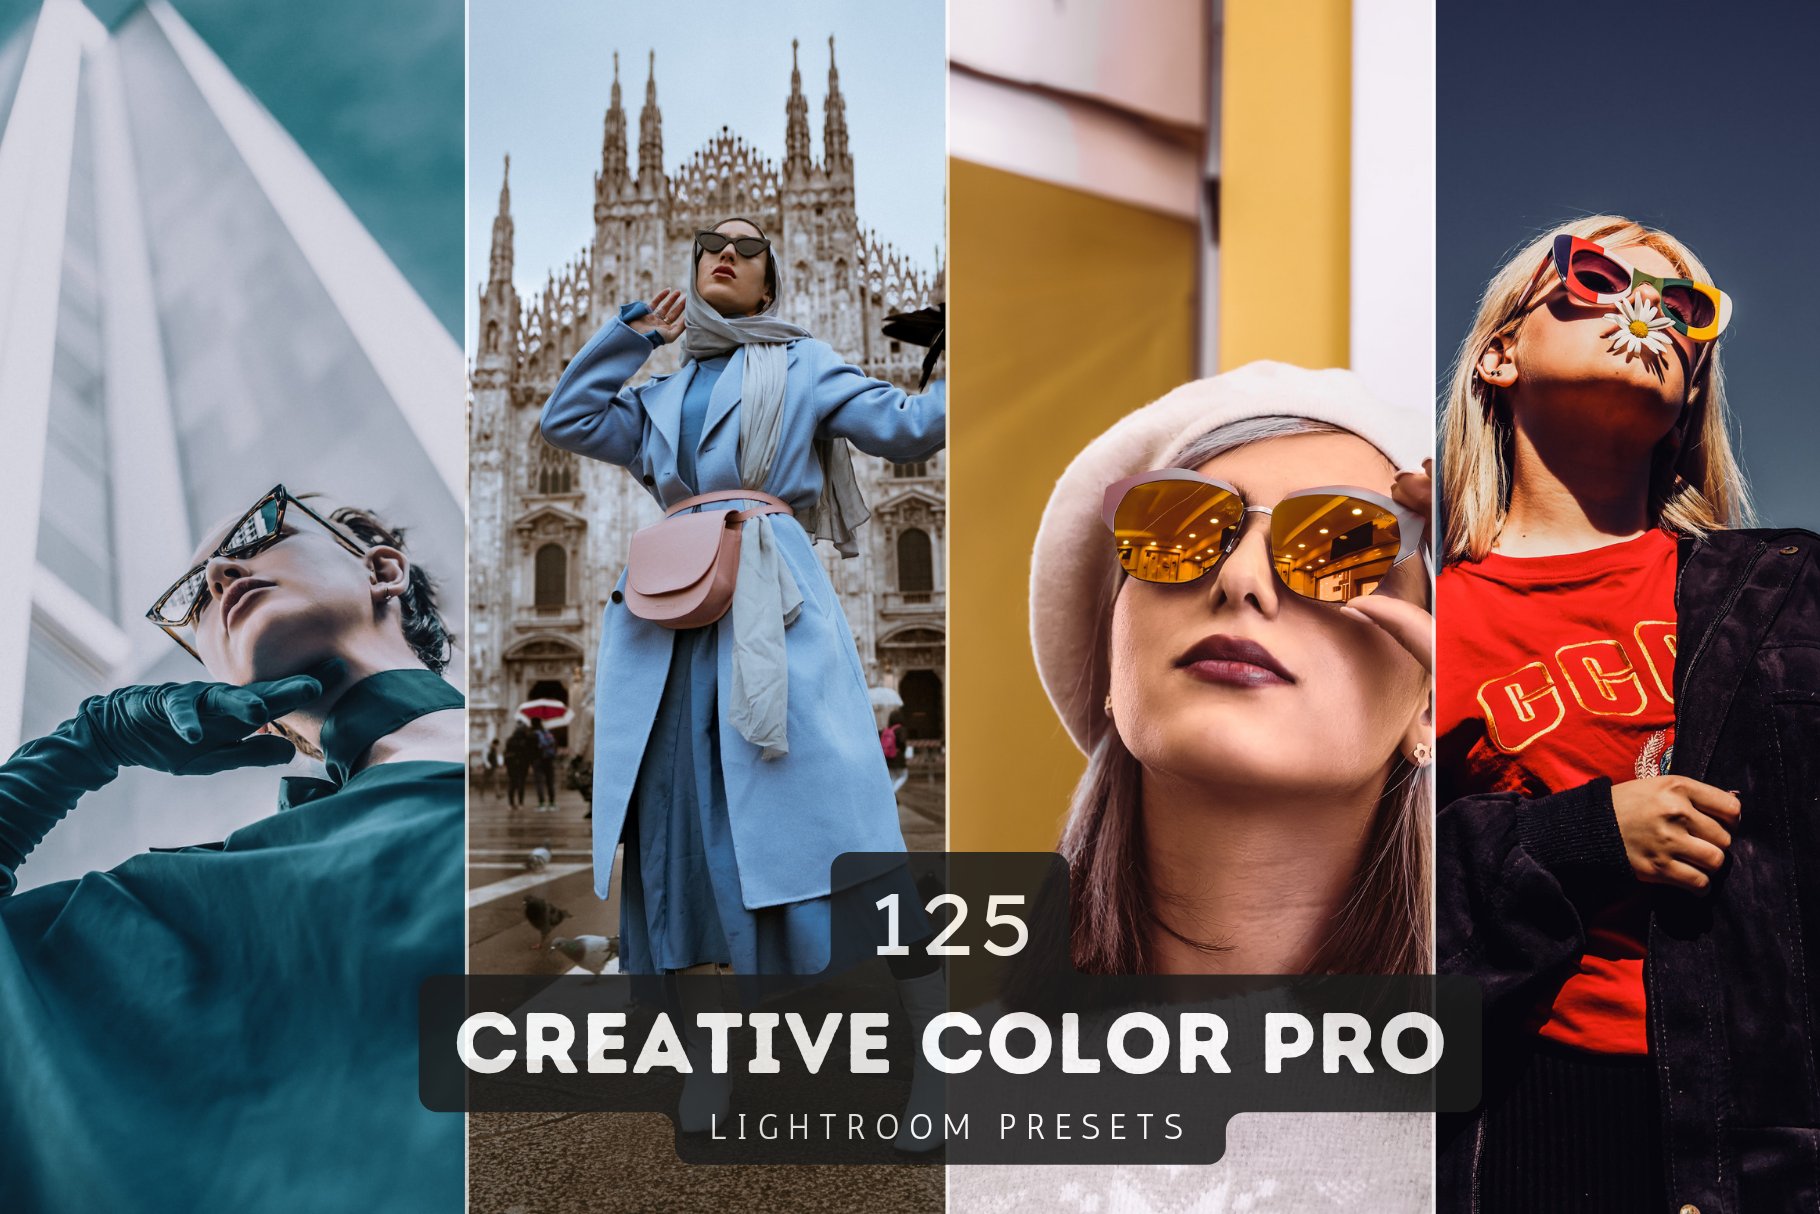 Color Pro Lightroom Presets Bundlecover image.